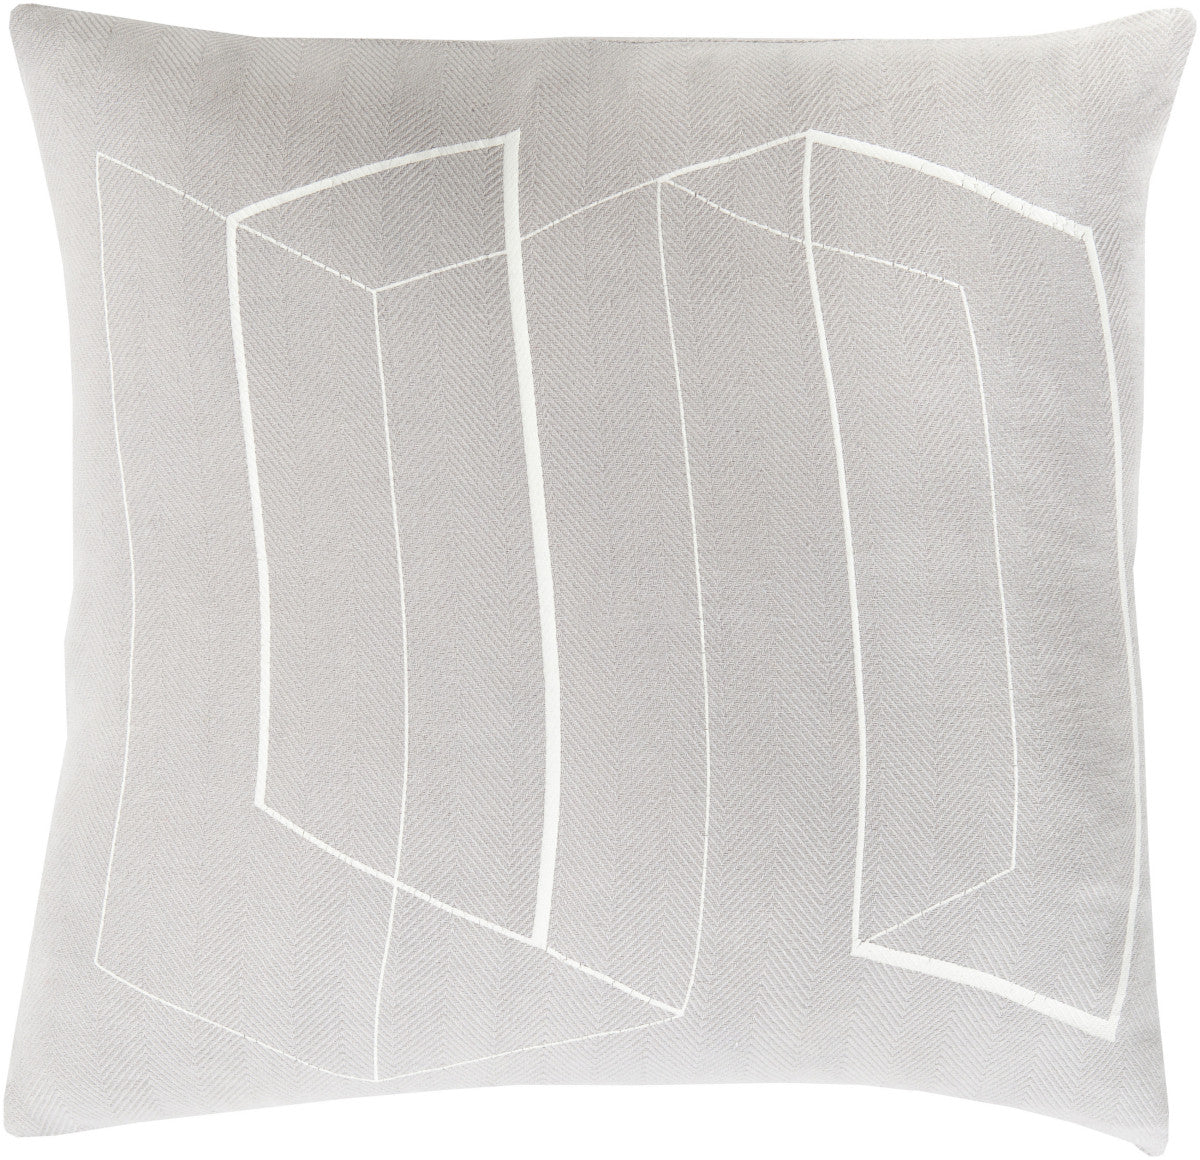 Surya Teori Lines and Angles TO-013 Pillow